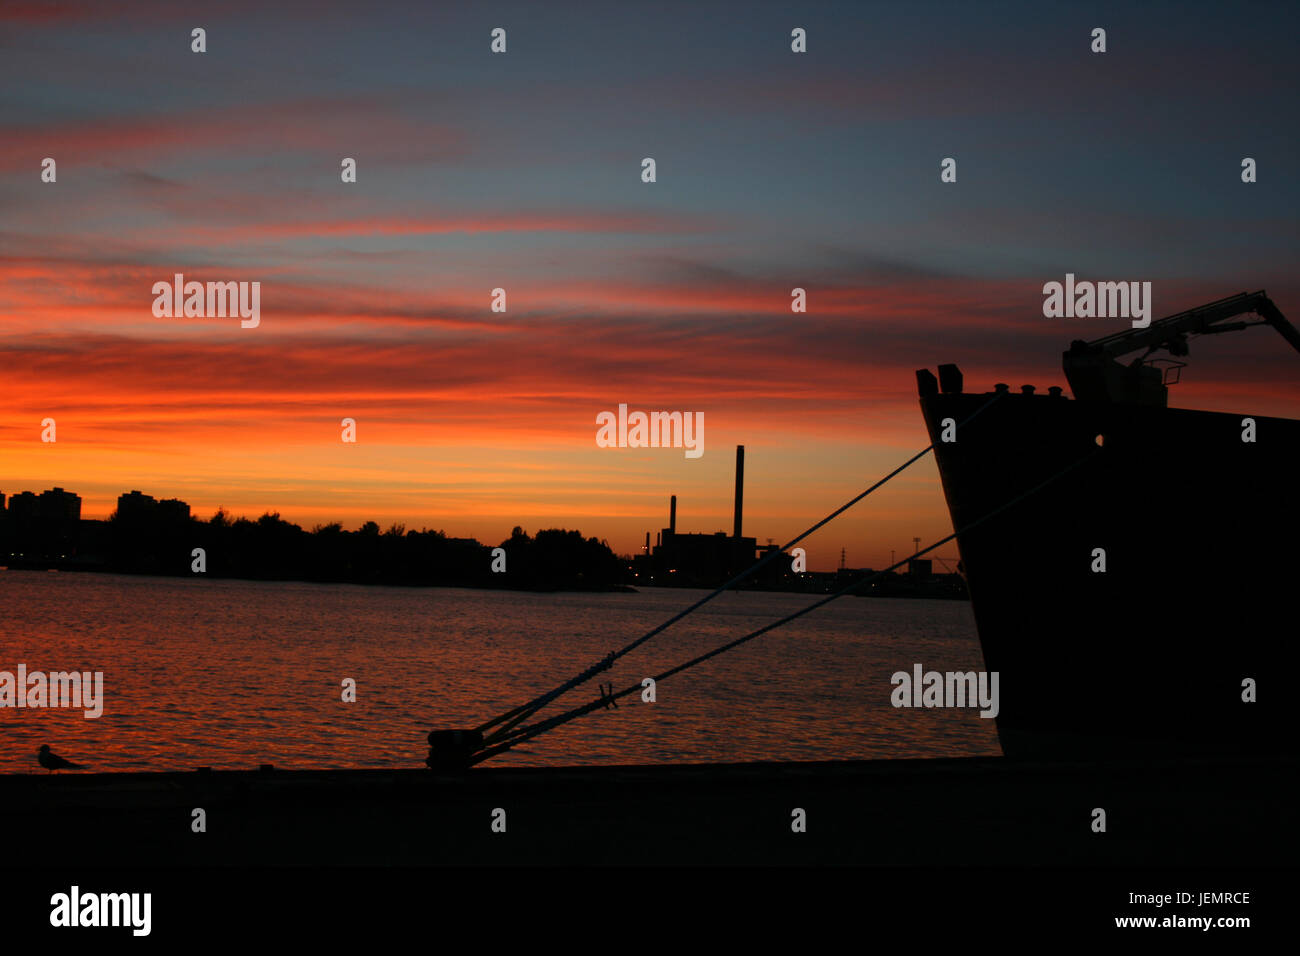 Sonnenuntergang in Helsinki - Finnland Stockfoto